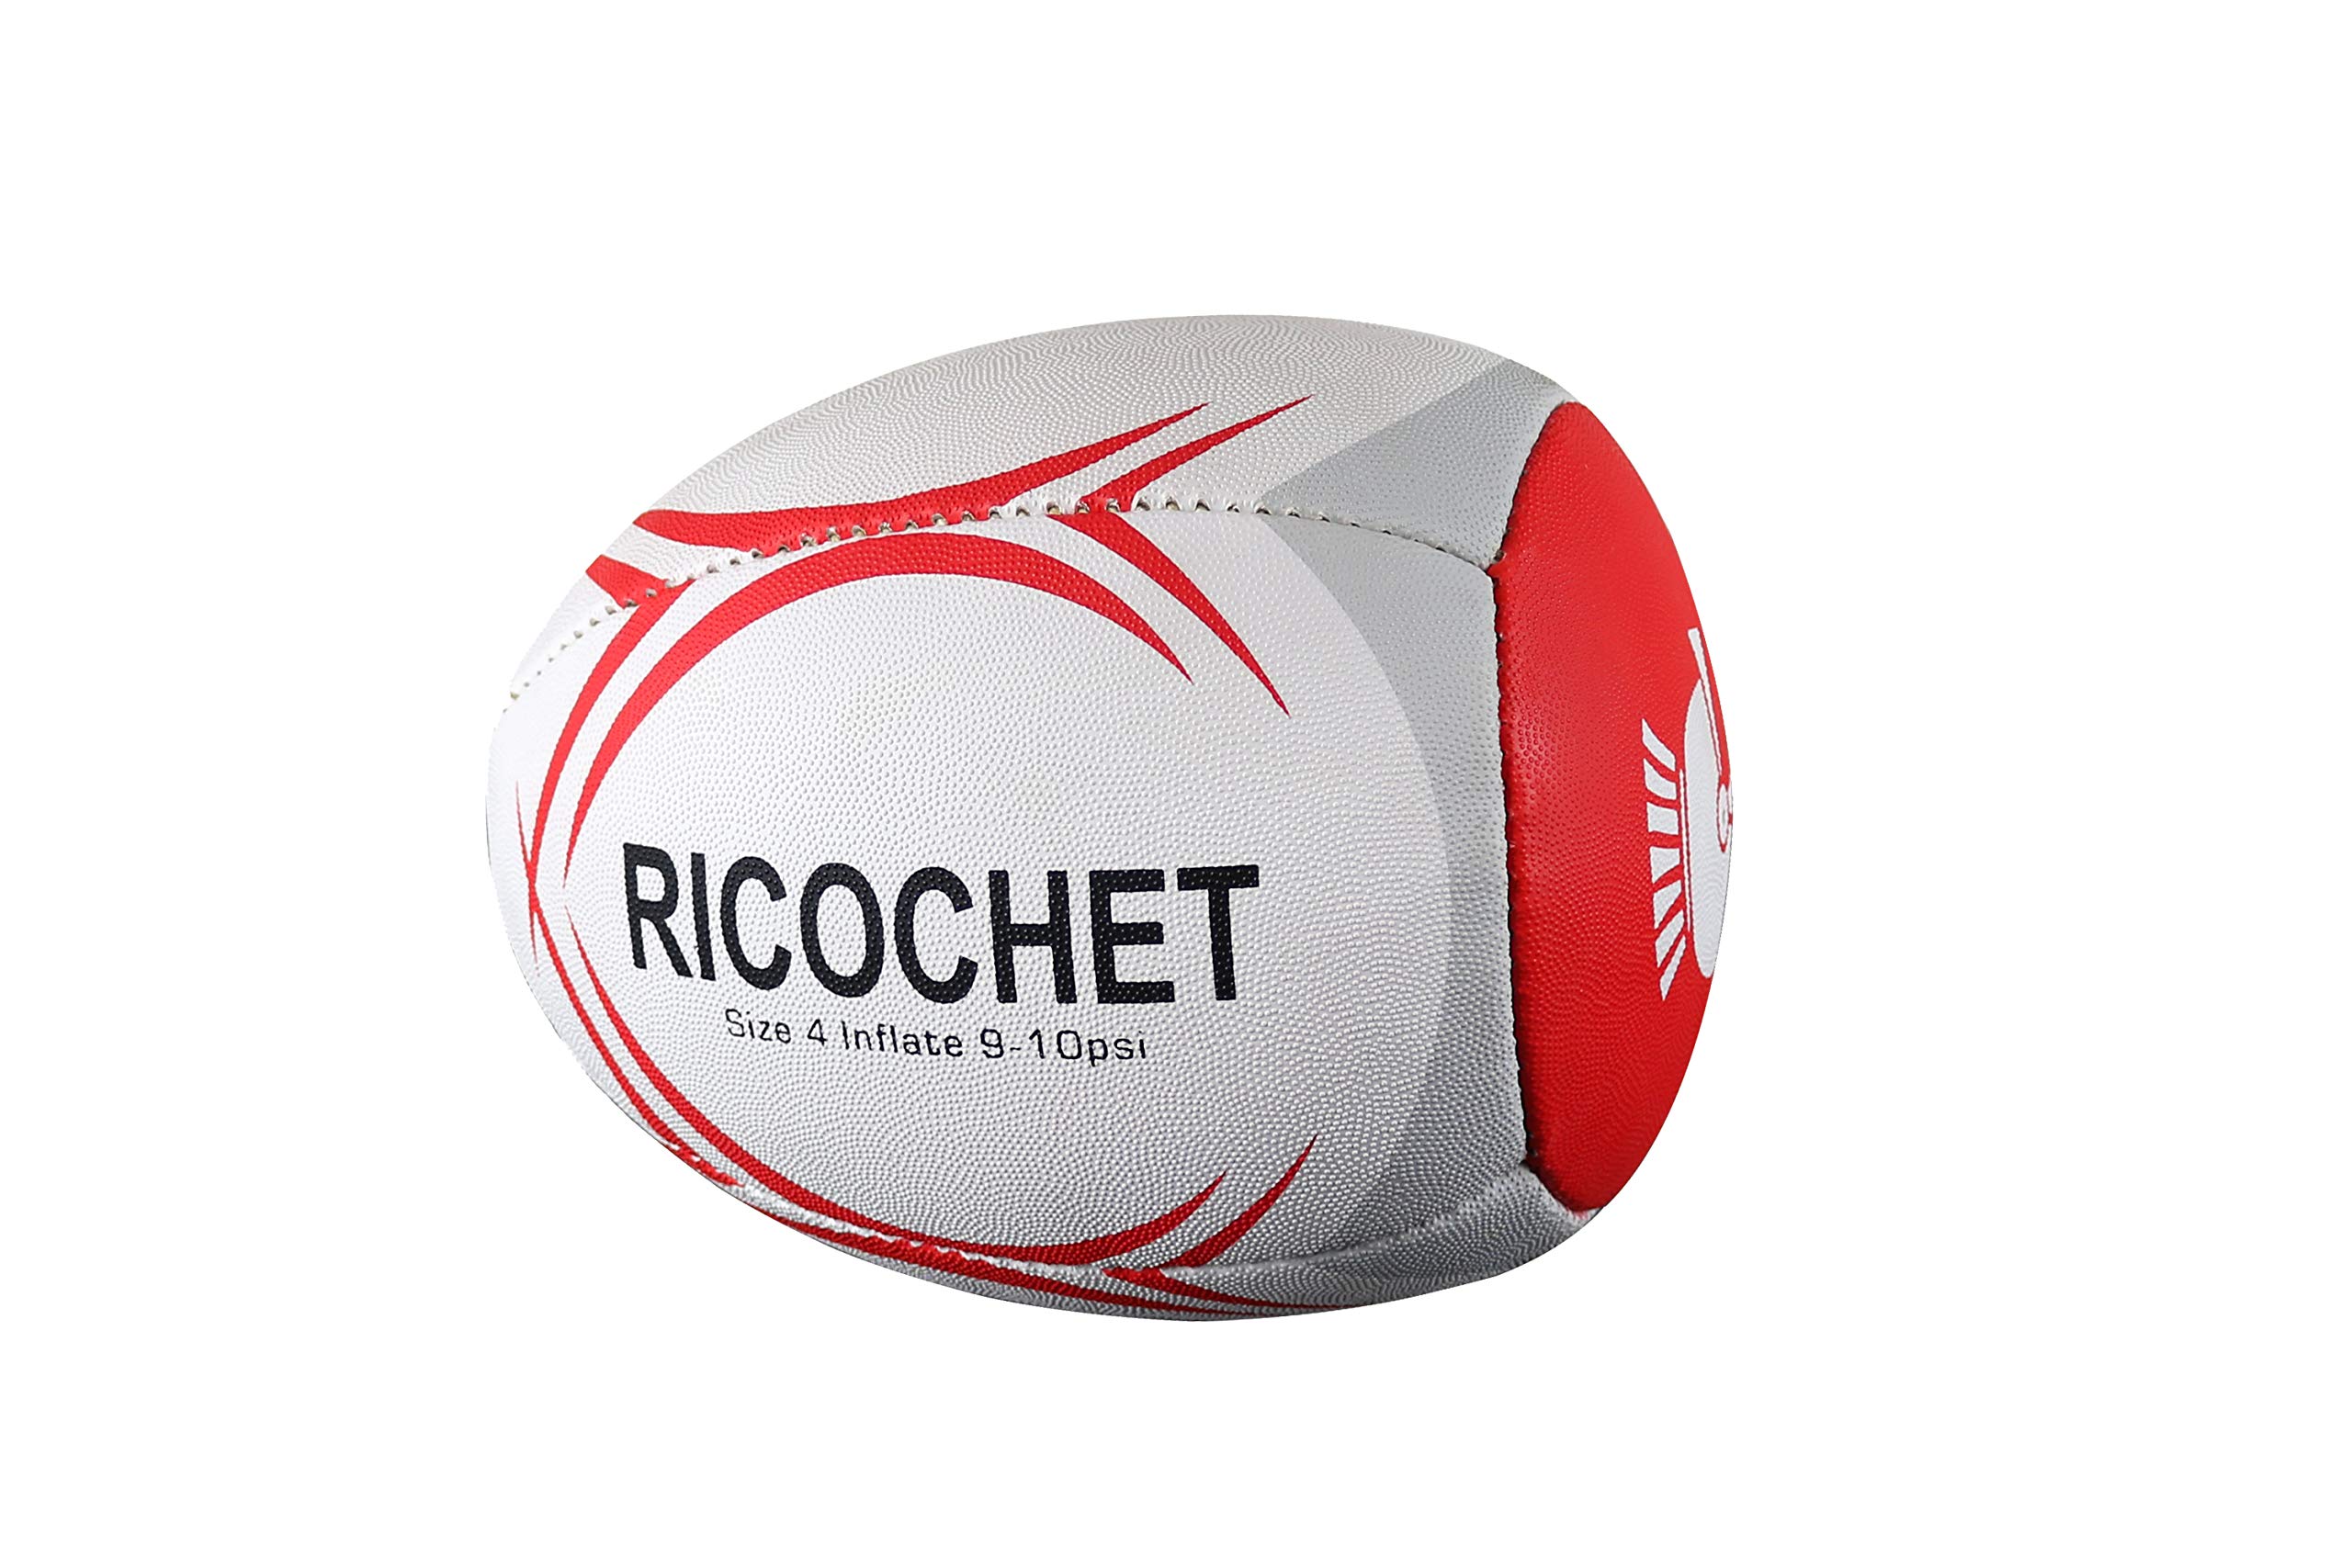 CENTURION Ricochet Trainingsball, Unisex, BAL211, rot, 4